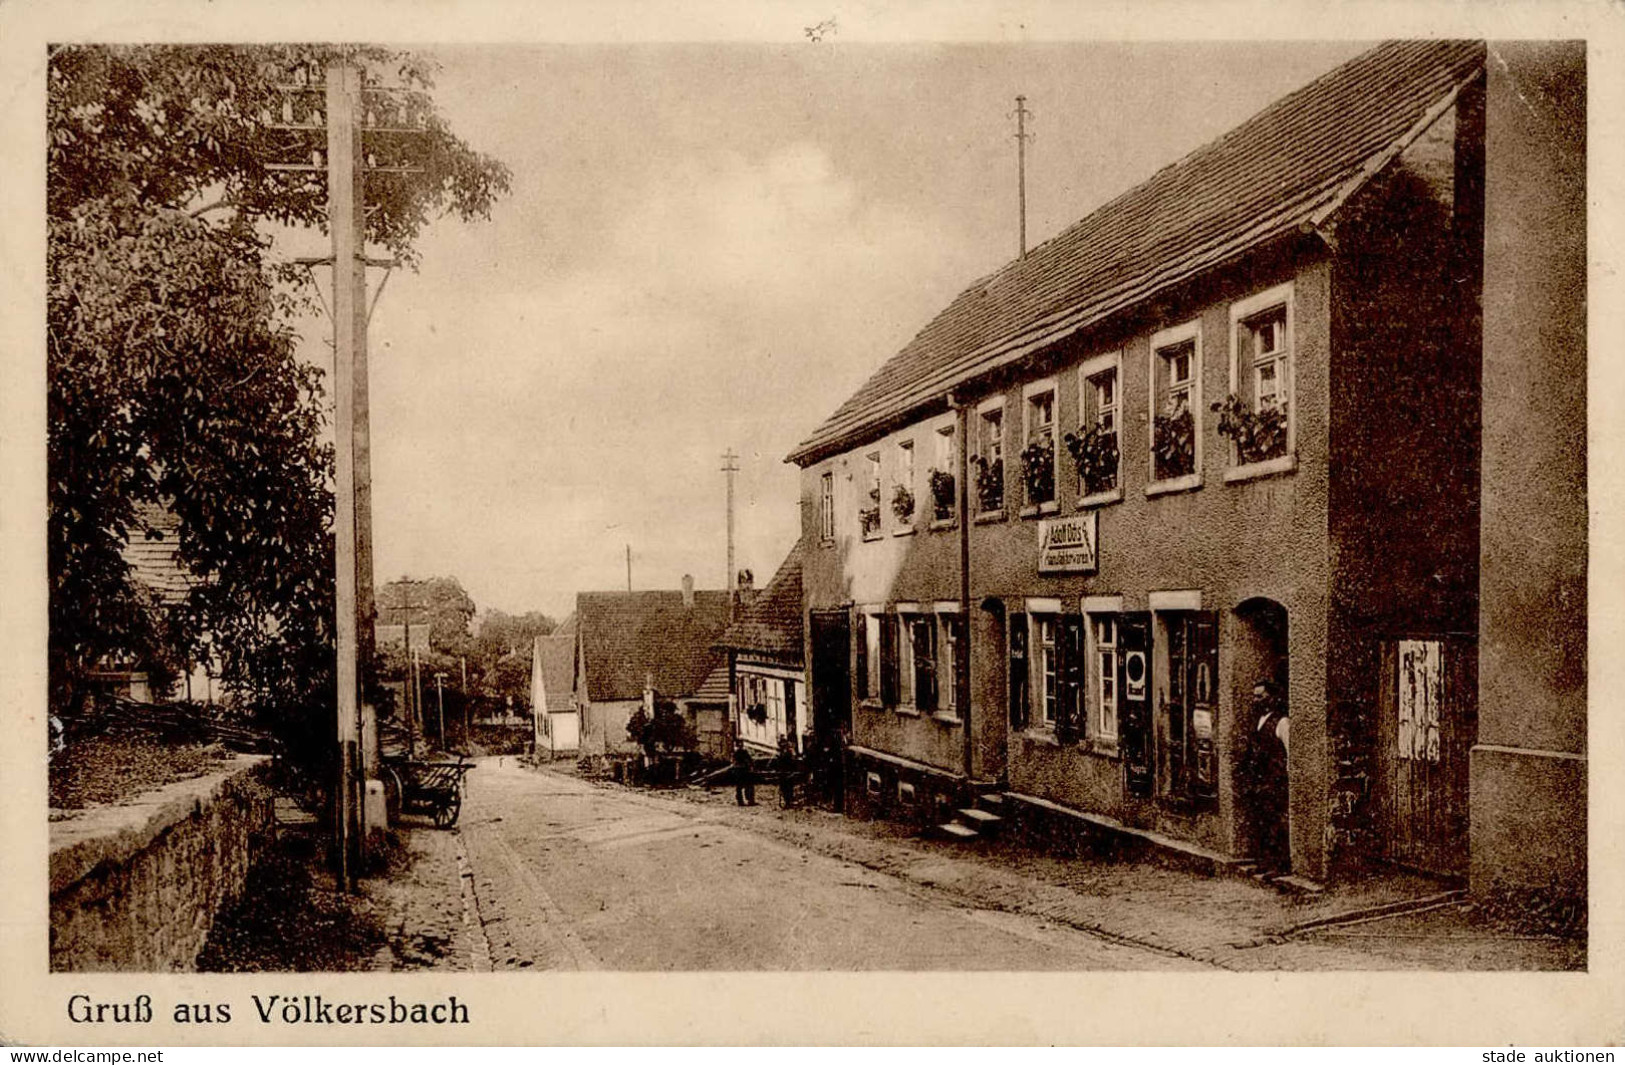 Völkersbach (7502) Handlung Ochs 1931 II (Stauchung) - Karlsruhe